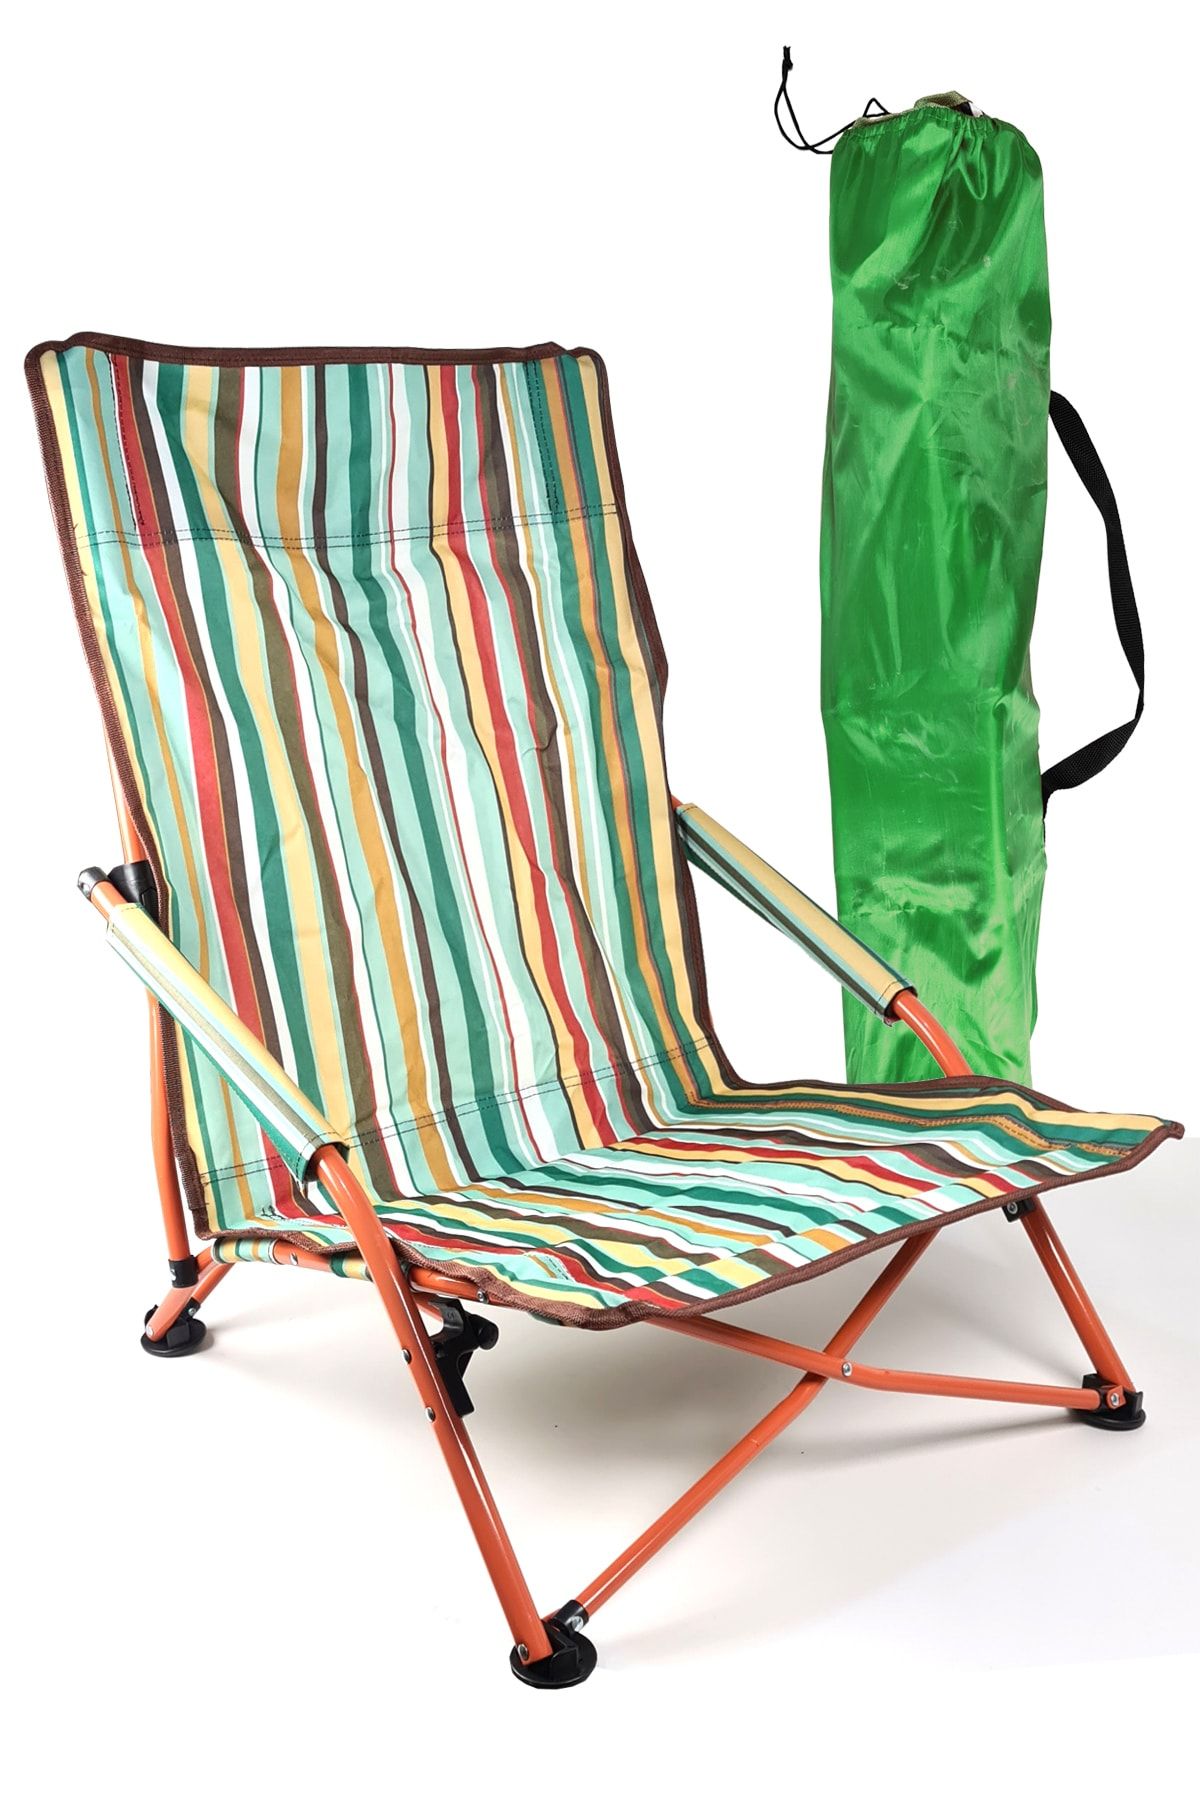 Binbirreyon Çantalı Plaj Sandalyesi Katlanır Kamp Sandalyesi Yere Yakın Sandalye 68cm Ha033